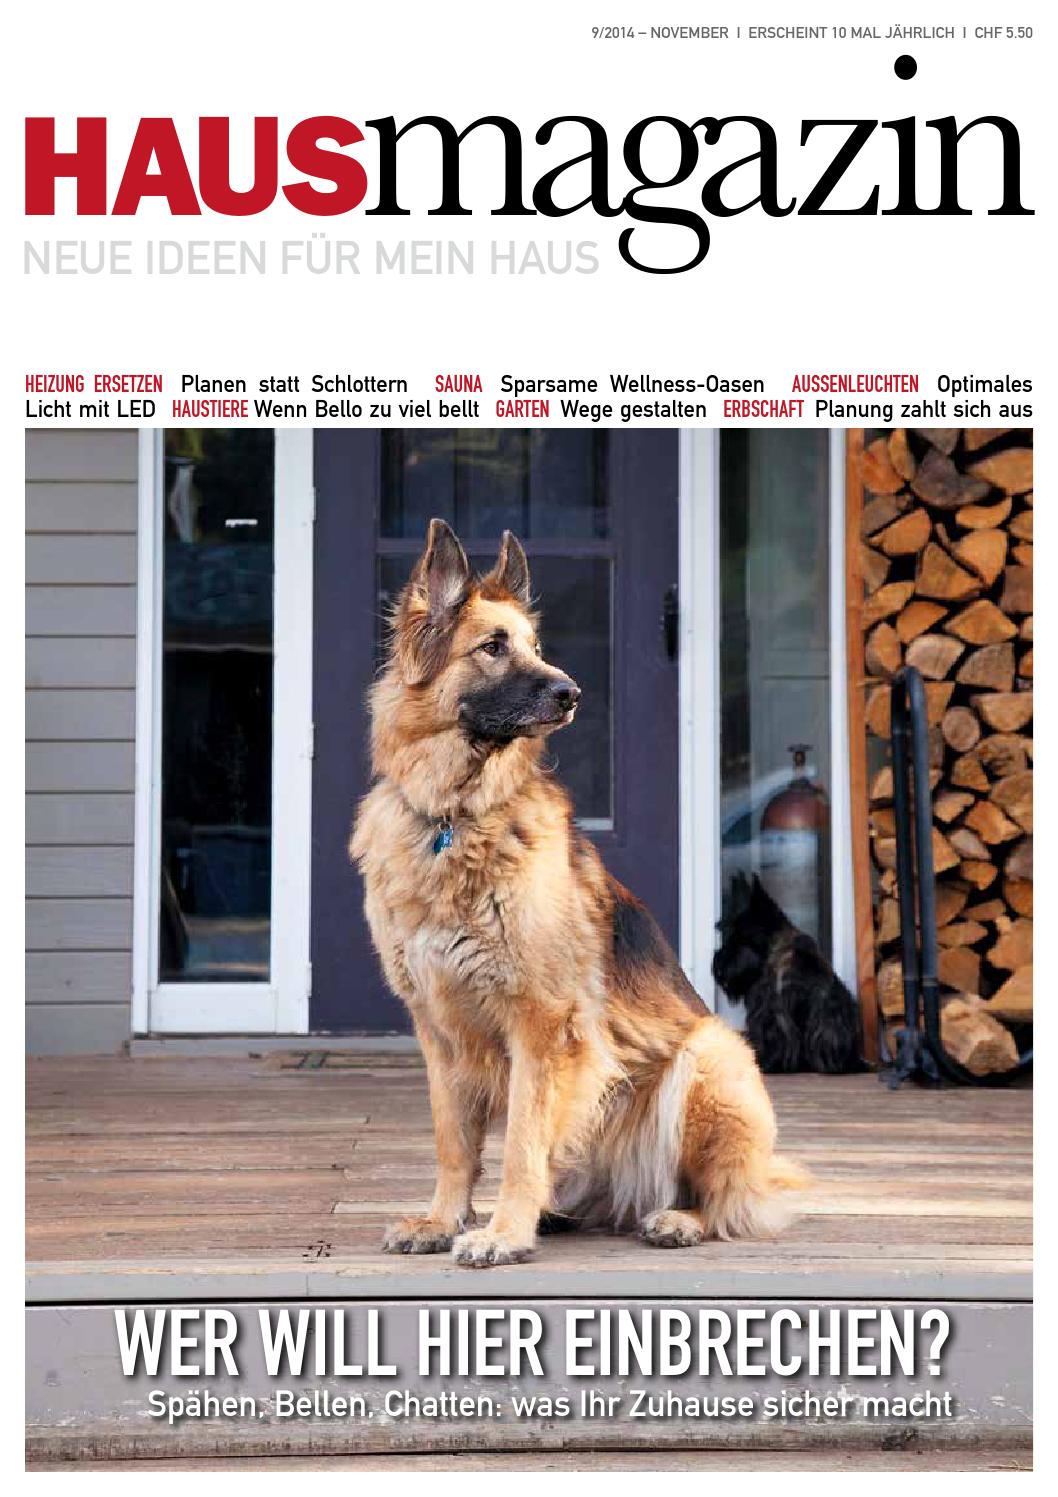 Gartenecke Gestalten Neu Hausmagazin November 2014 by Haus Magazin issuu